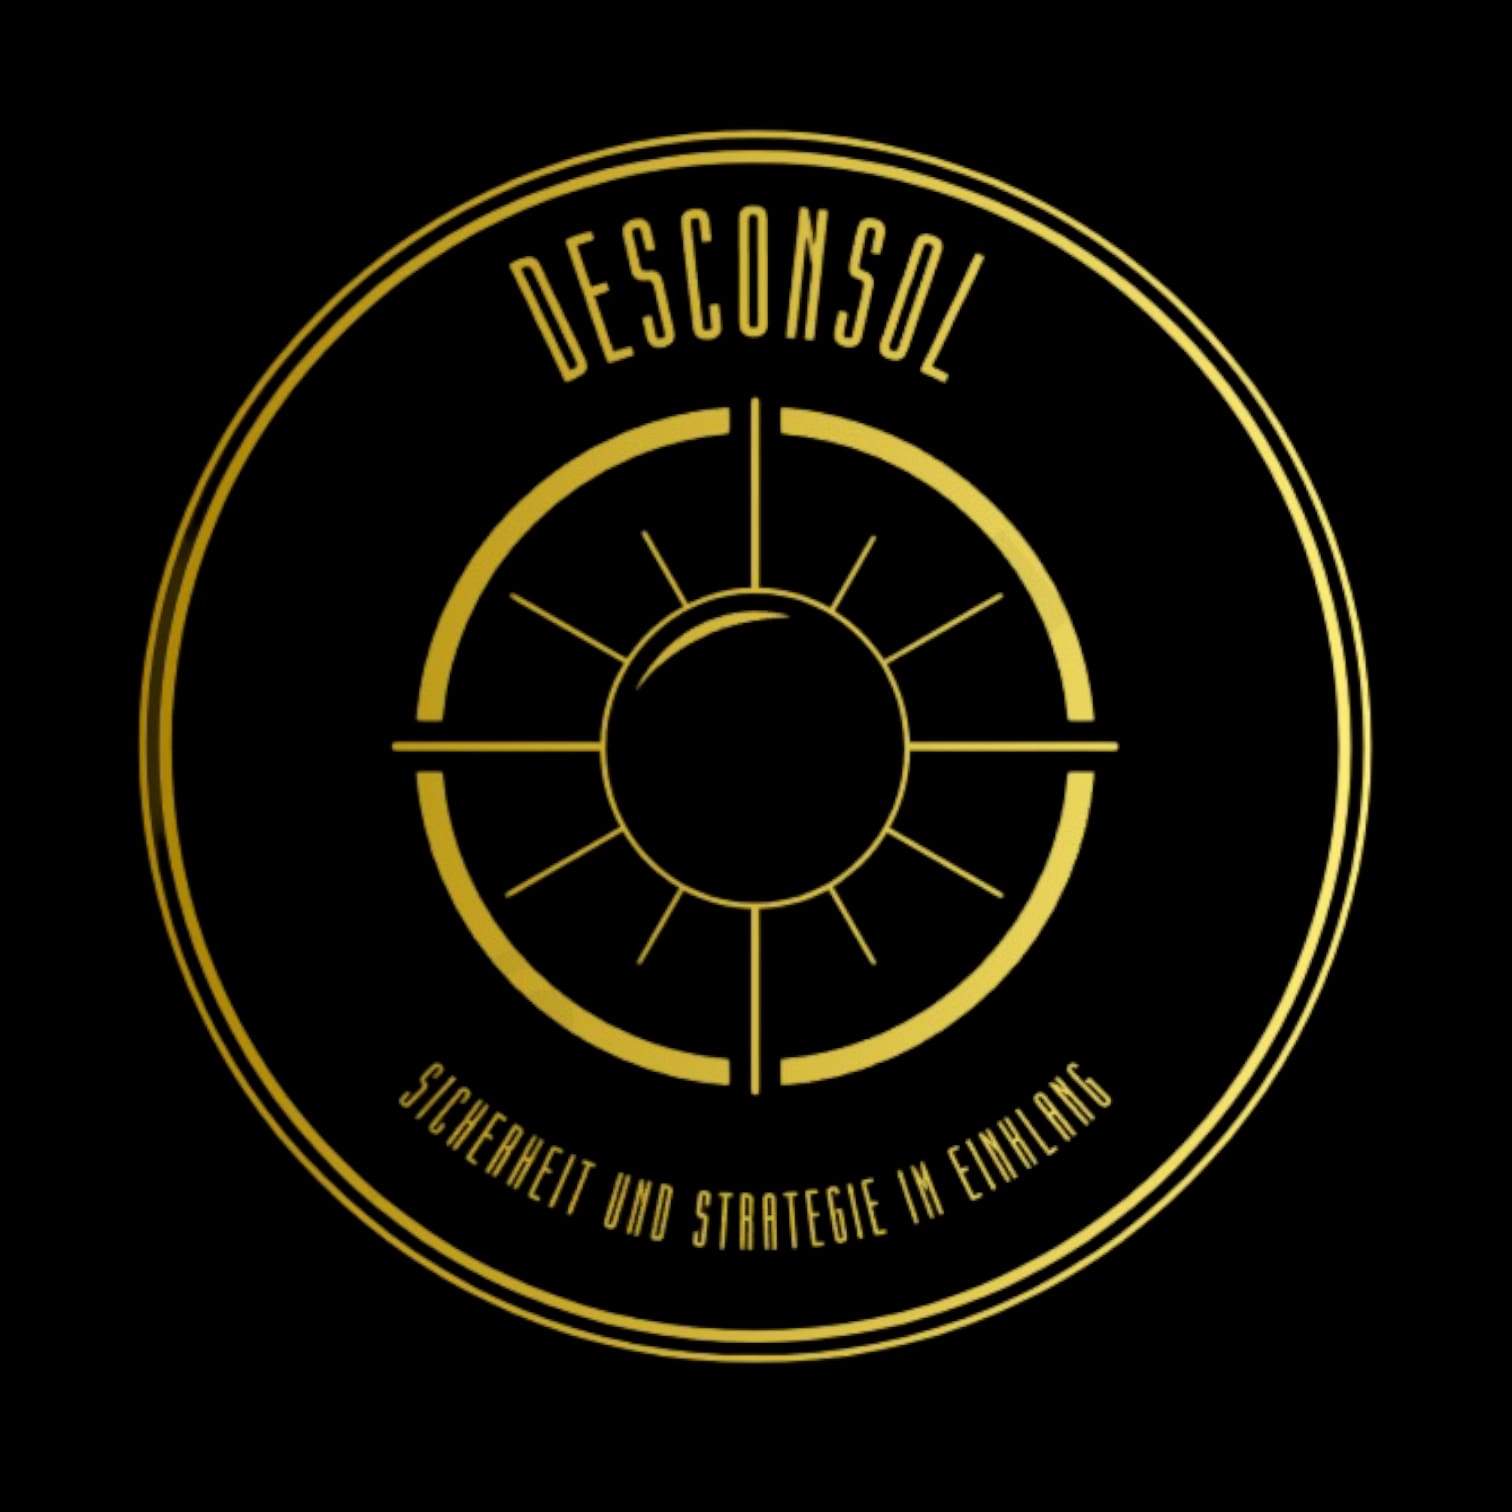 DESConSol Logo